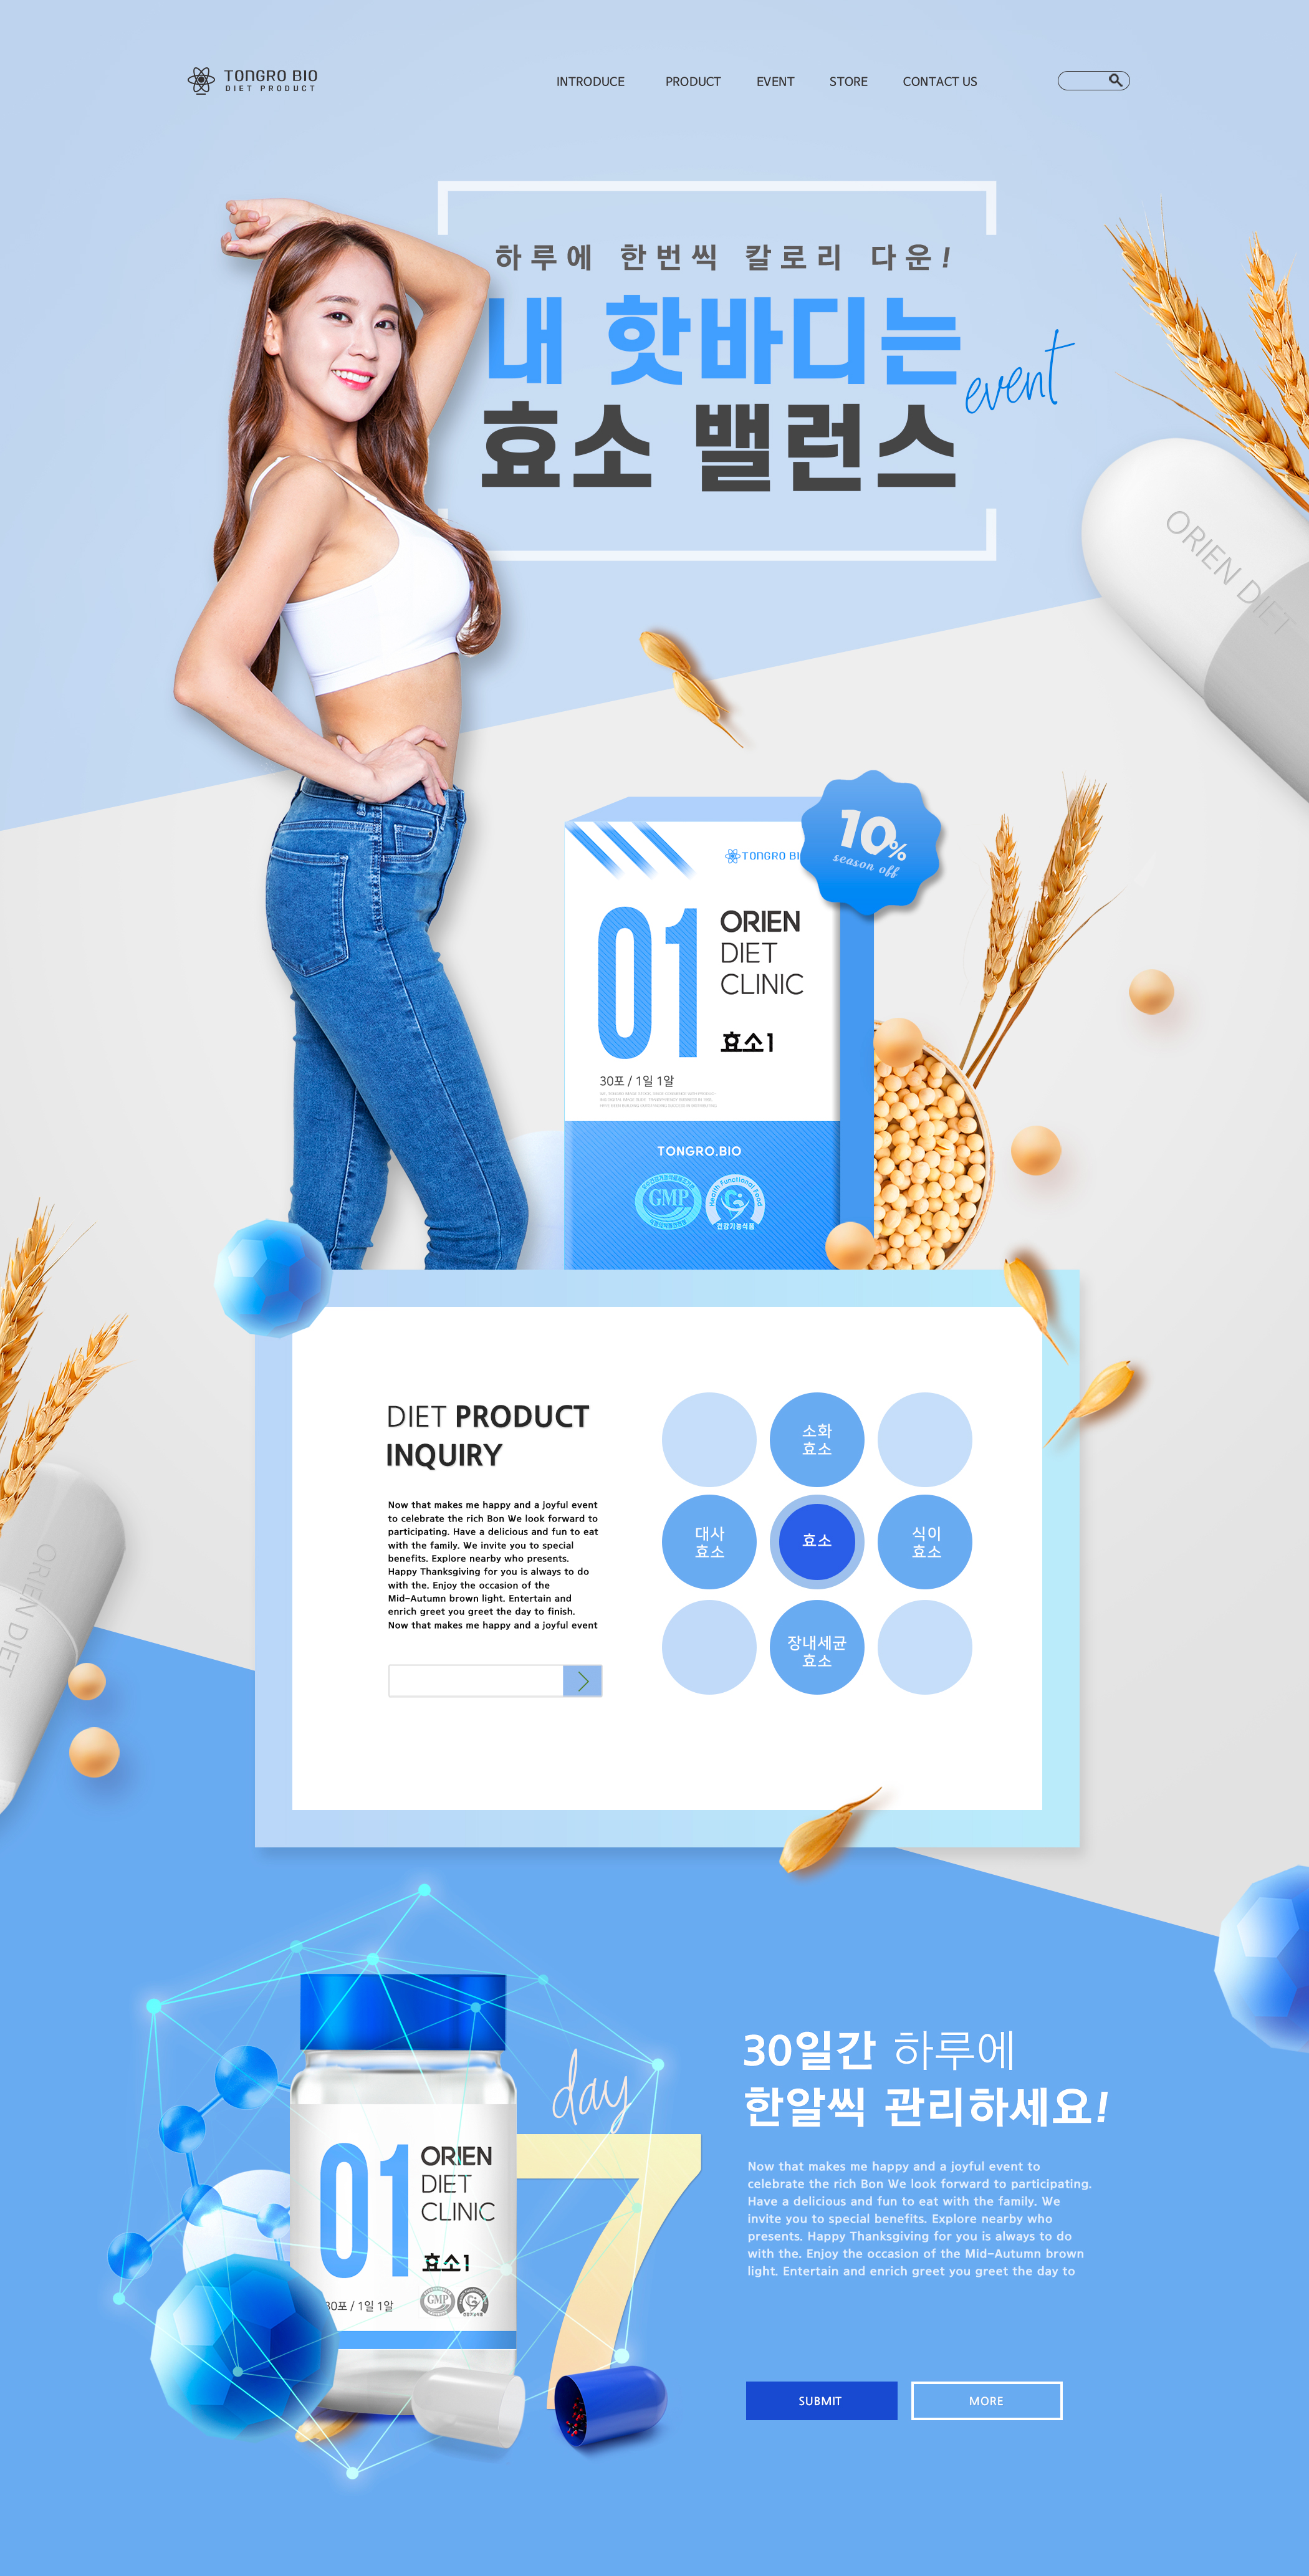 韩式瘦身保健品饮食促销网页设计模板